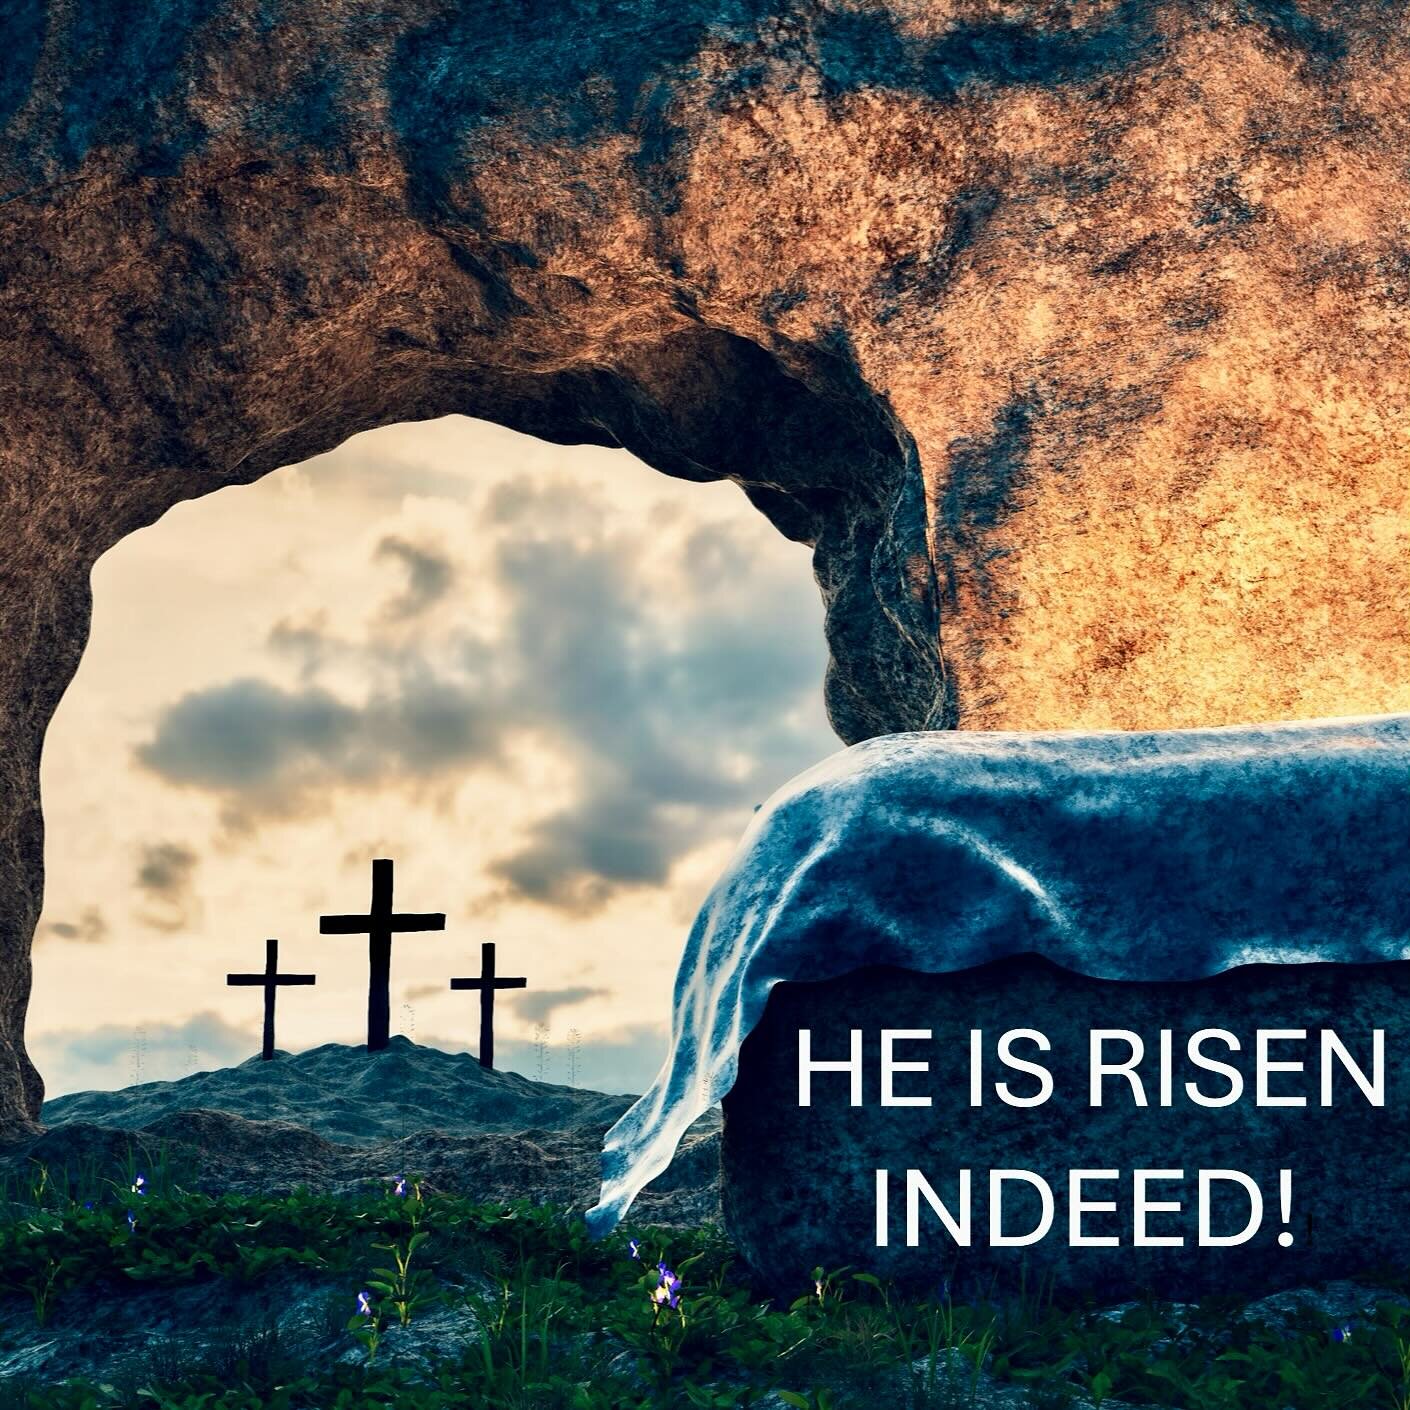 He is risen! 

-

#easter #happyeaster #heisrisen